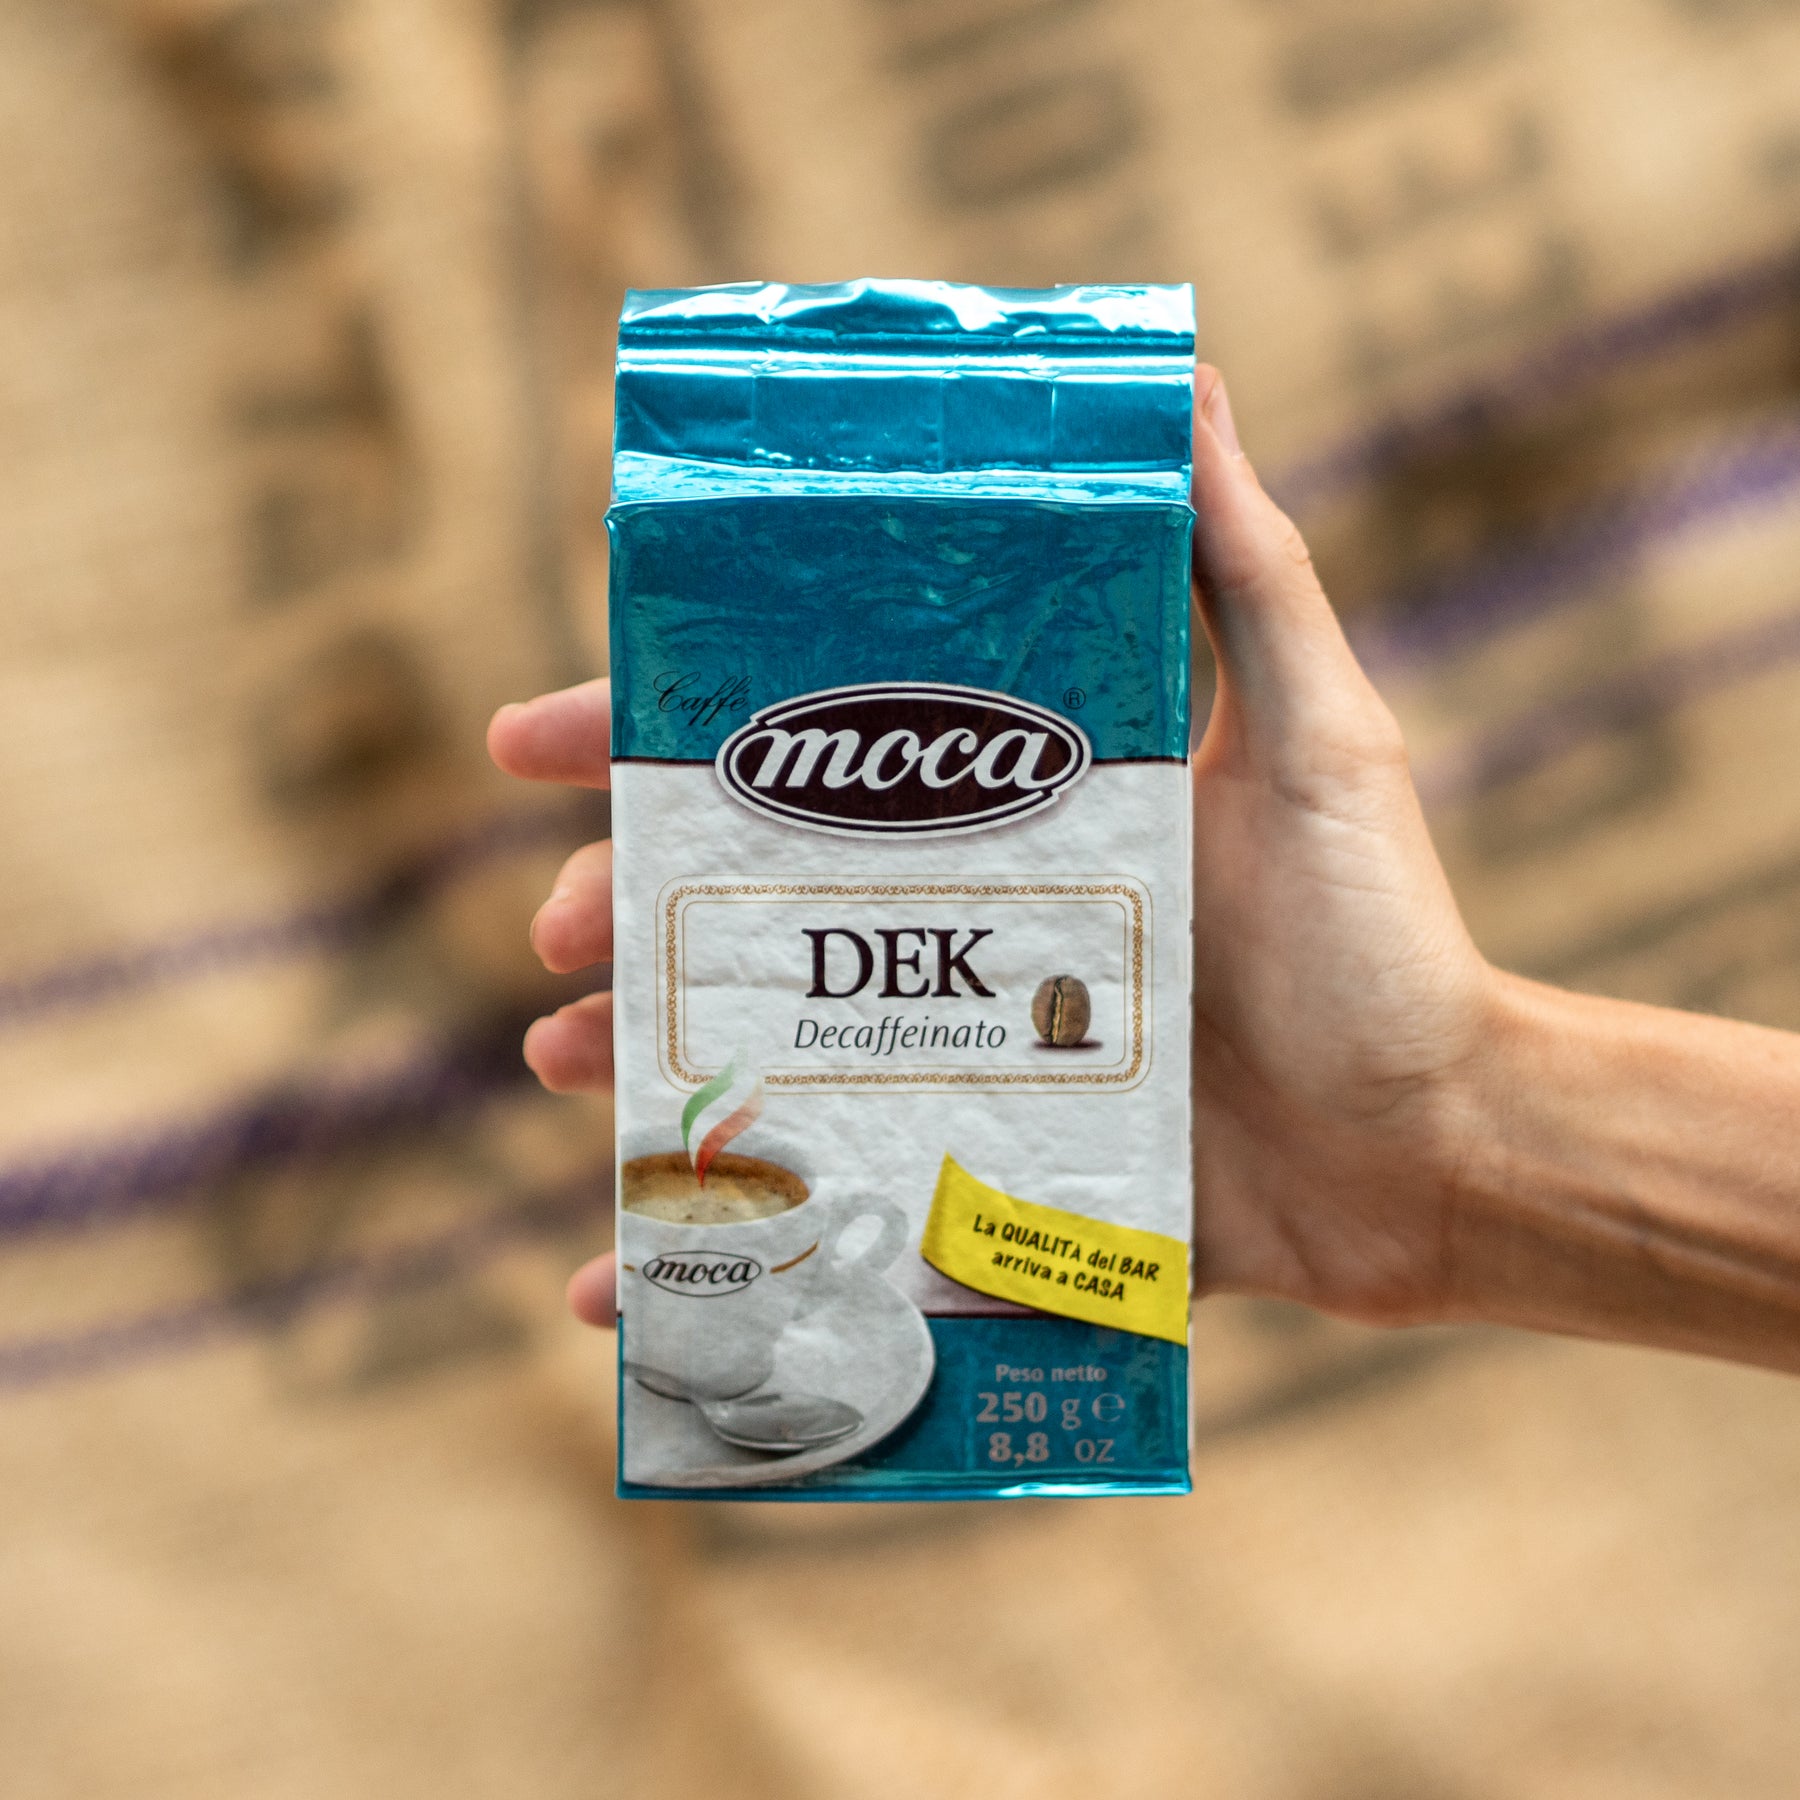 摩卡摩卡咖啡粉 1KG - Dek - 4 个真空包装和 250g 保鲜袋